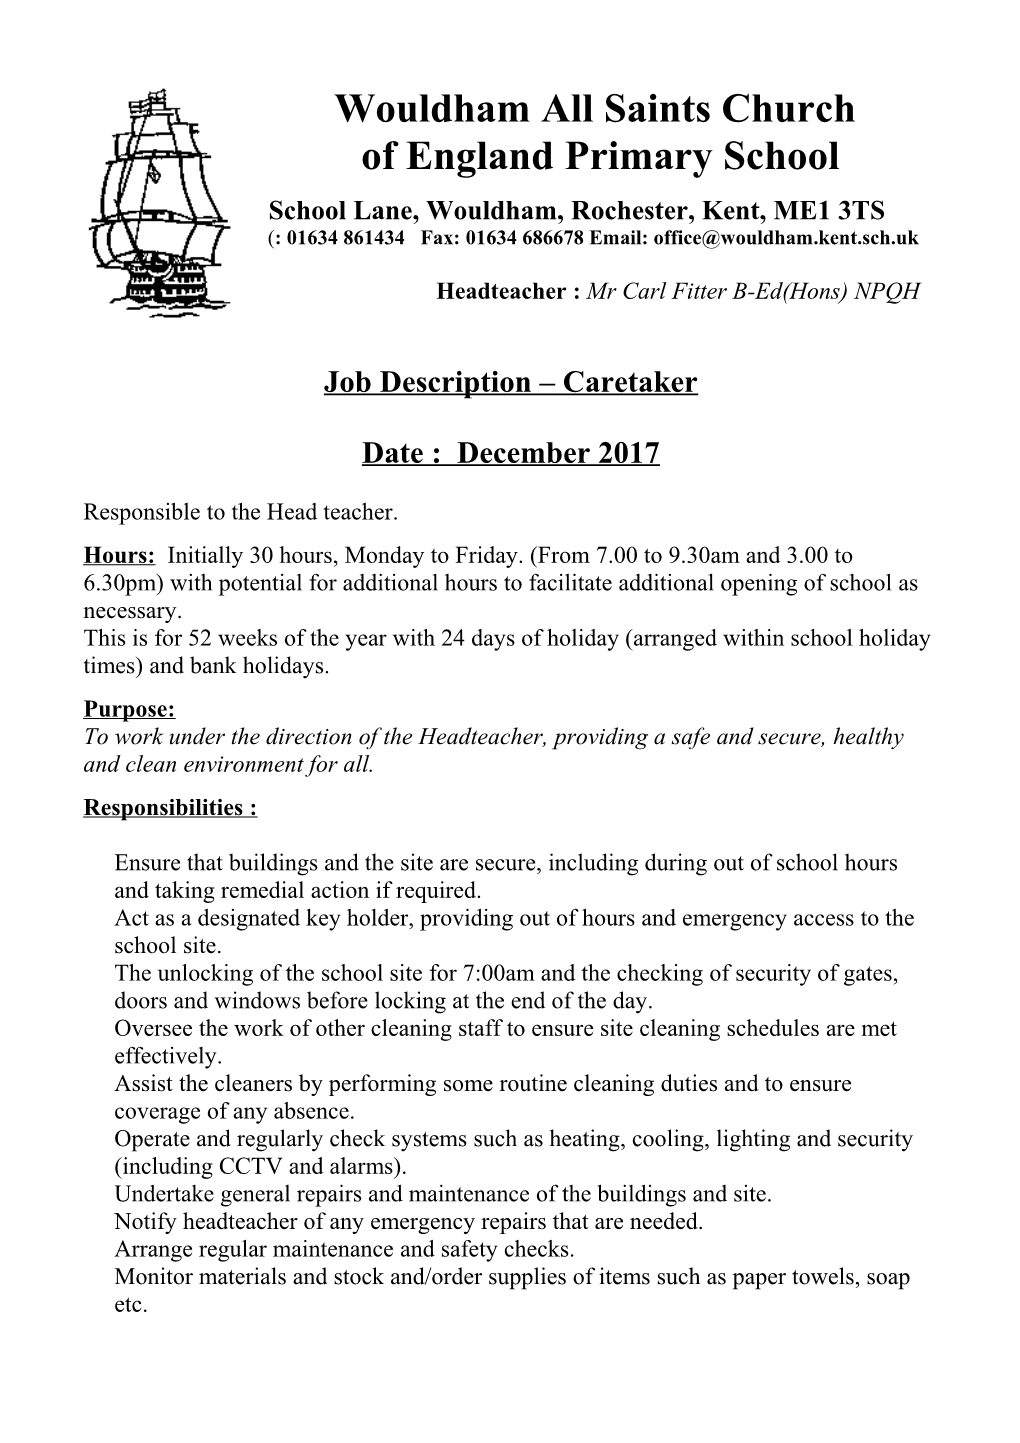 Job Description Caretaker